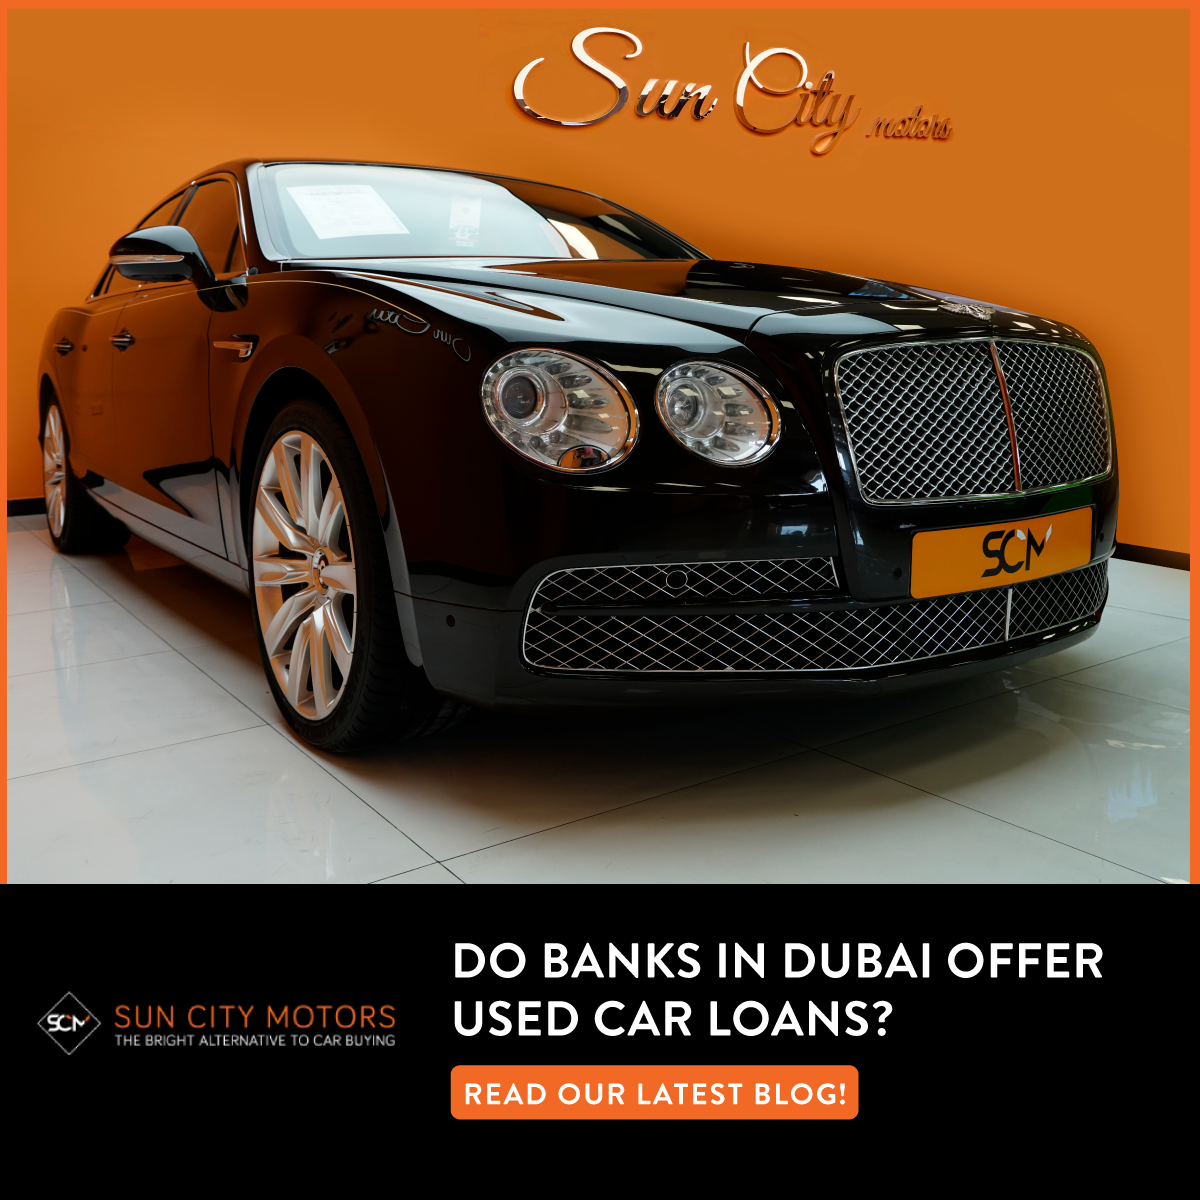 Do banks in Dubai offer used car loans?